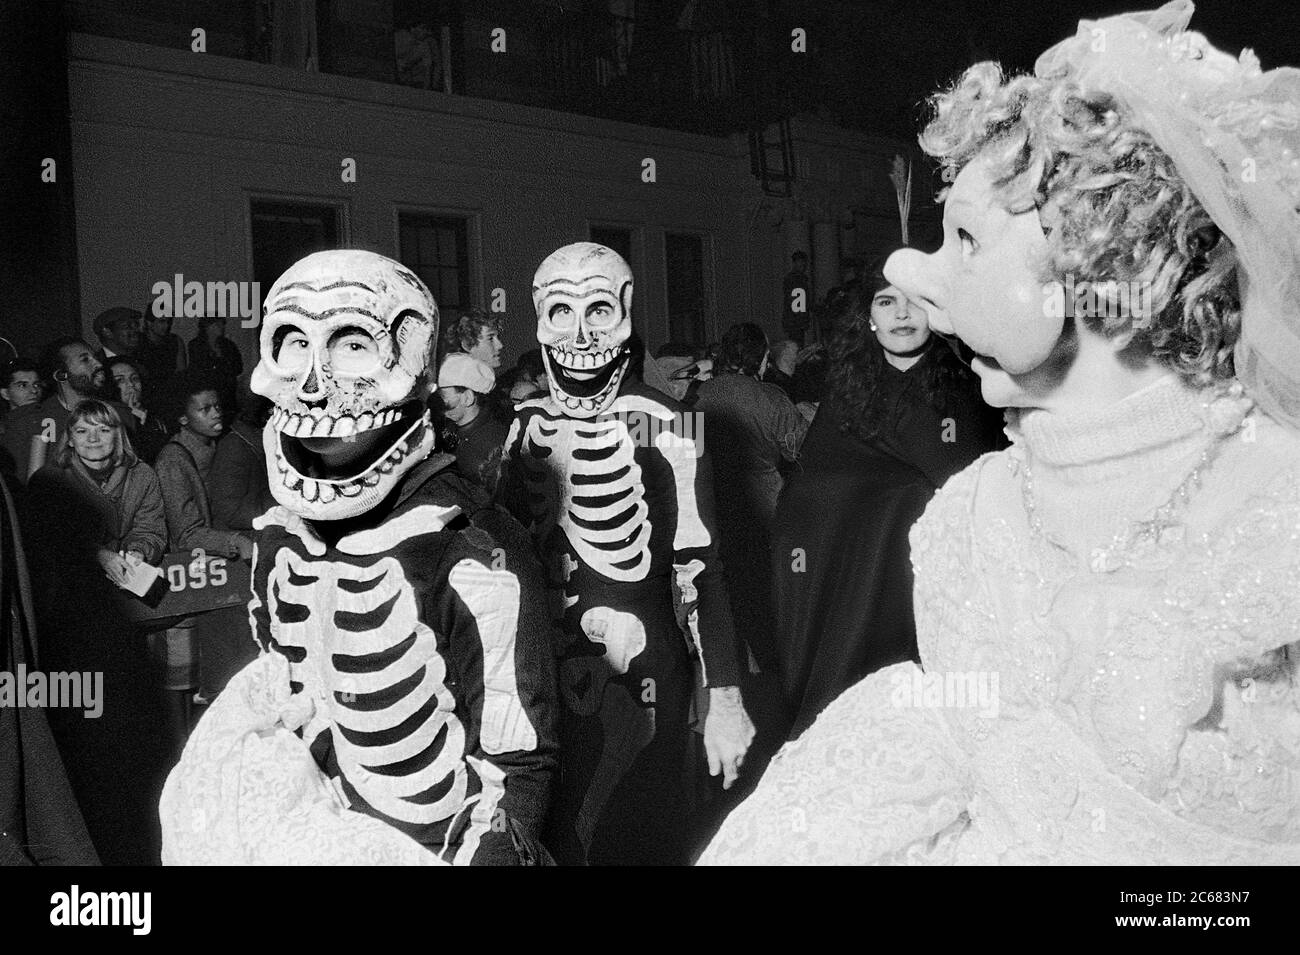 Scheletri al Greenwich Village Halloween Parade, New York City, USA negli anni '80 fotografati con film in bianco e nero di notte. Foto Stock